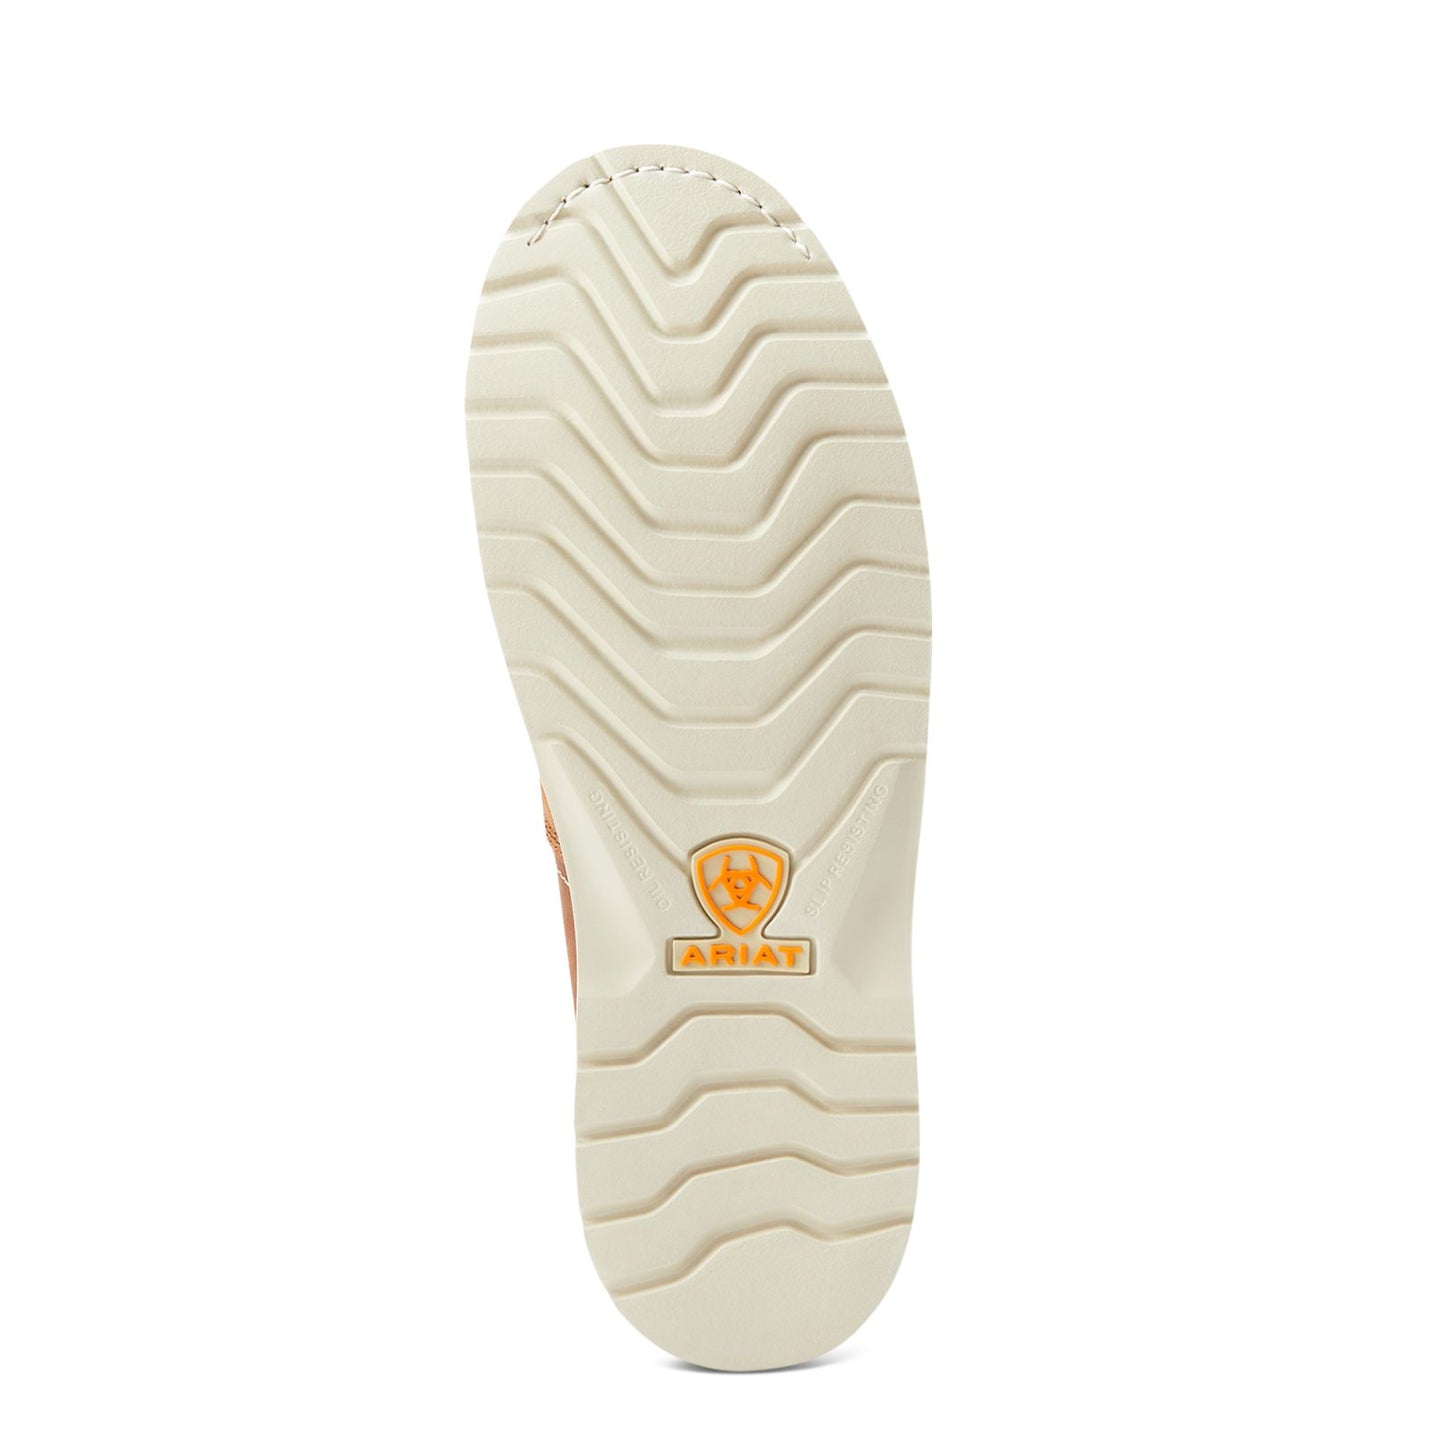 Ariat Men's Rebar Wedge Moc Toe 6" Waterproof Composite Toe Work Boot